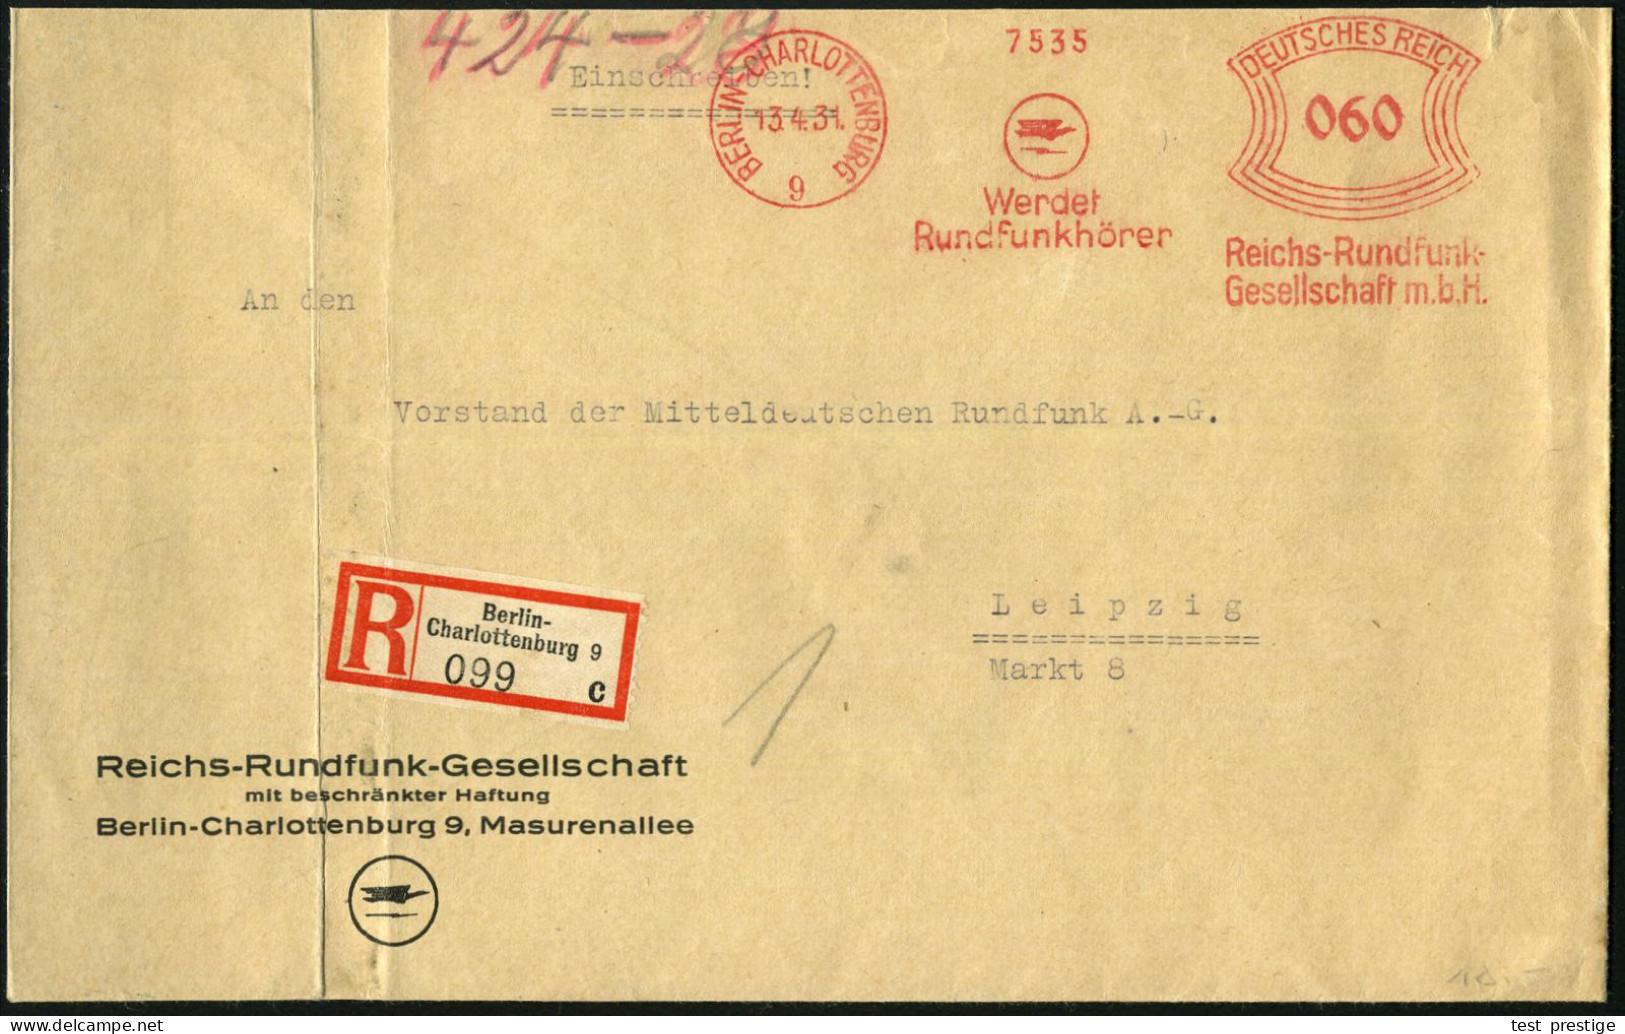 BERLIN-CHARLOTTENBURG/ 9/ Werdet/ Rundfunkhörer/ Reichs-Rundfunk-/ GmbH 1931 (13.4.) AFS Francotyp 060 Pf. (Logo) Auf Mo - Sonstige